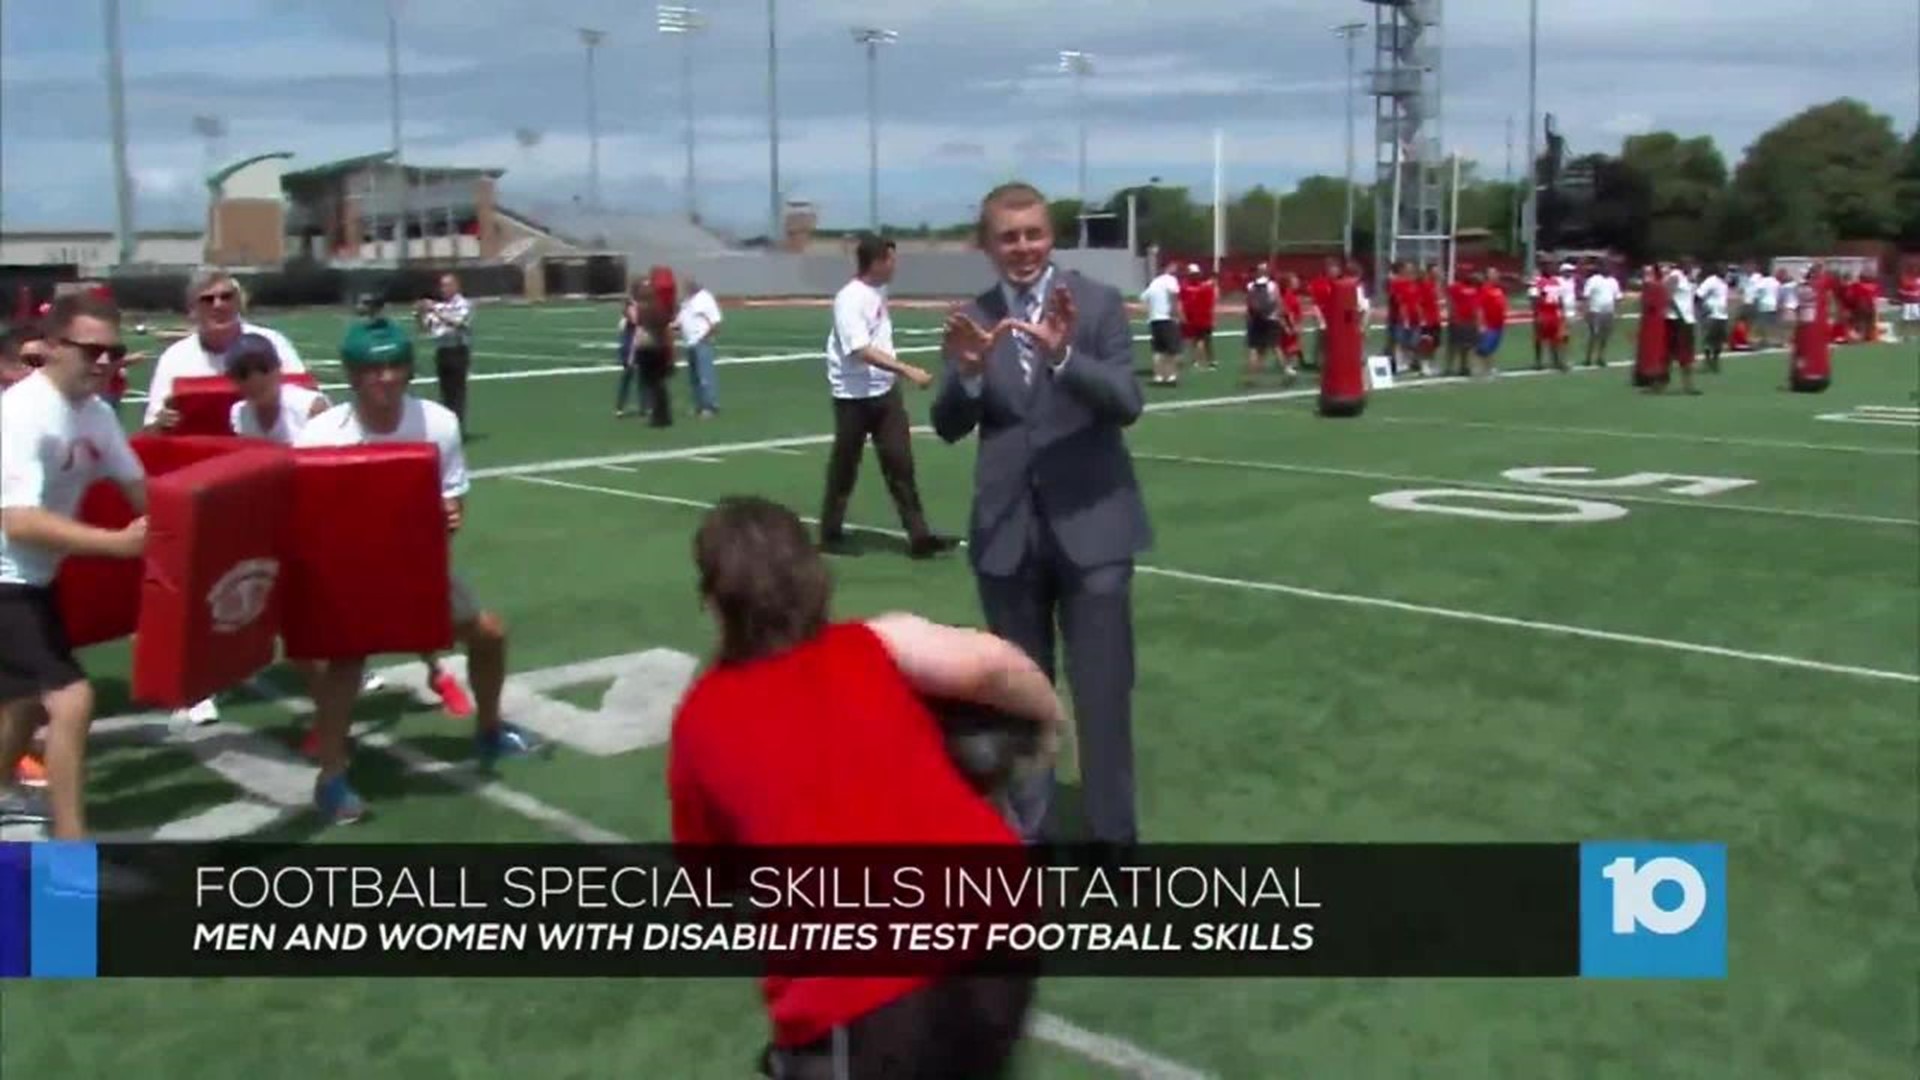 Football Special Skills Invitational